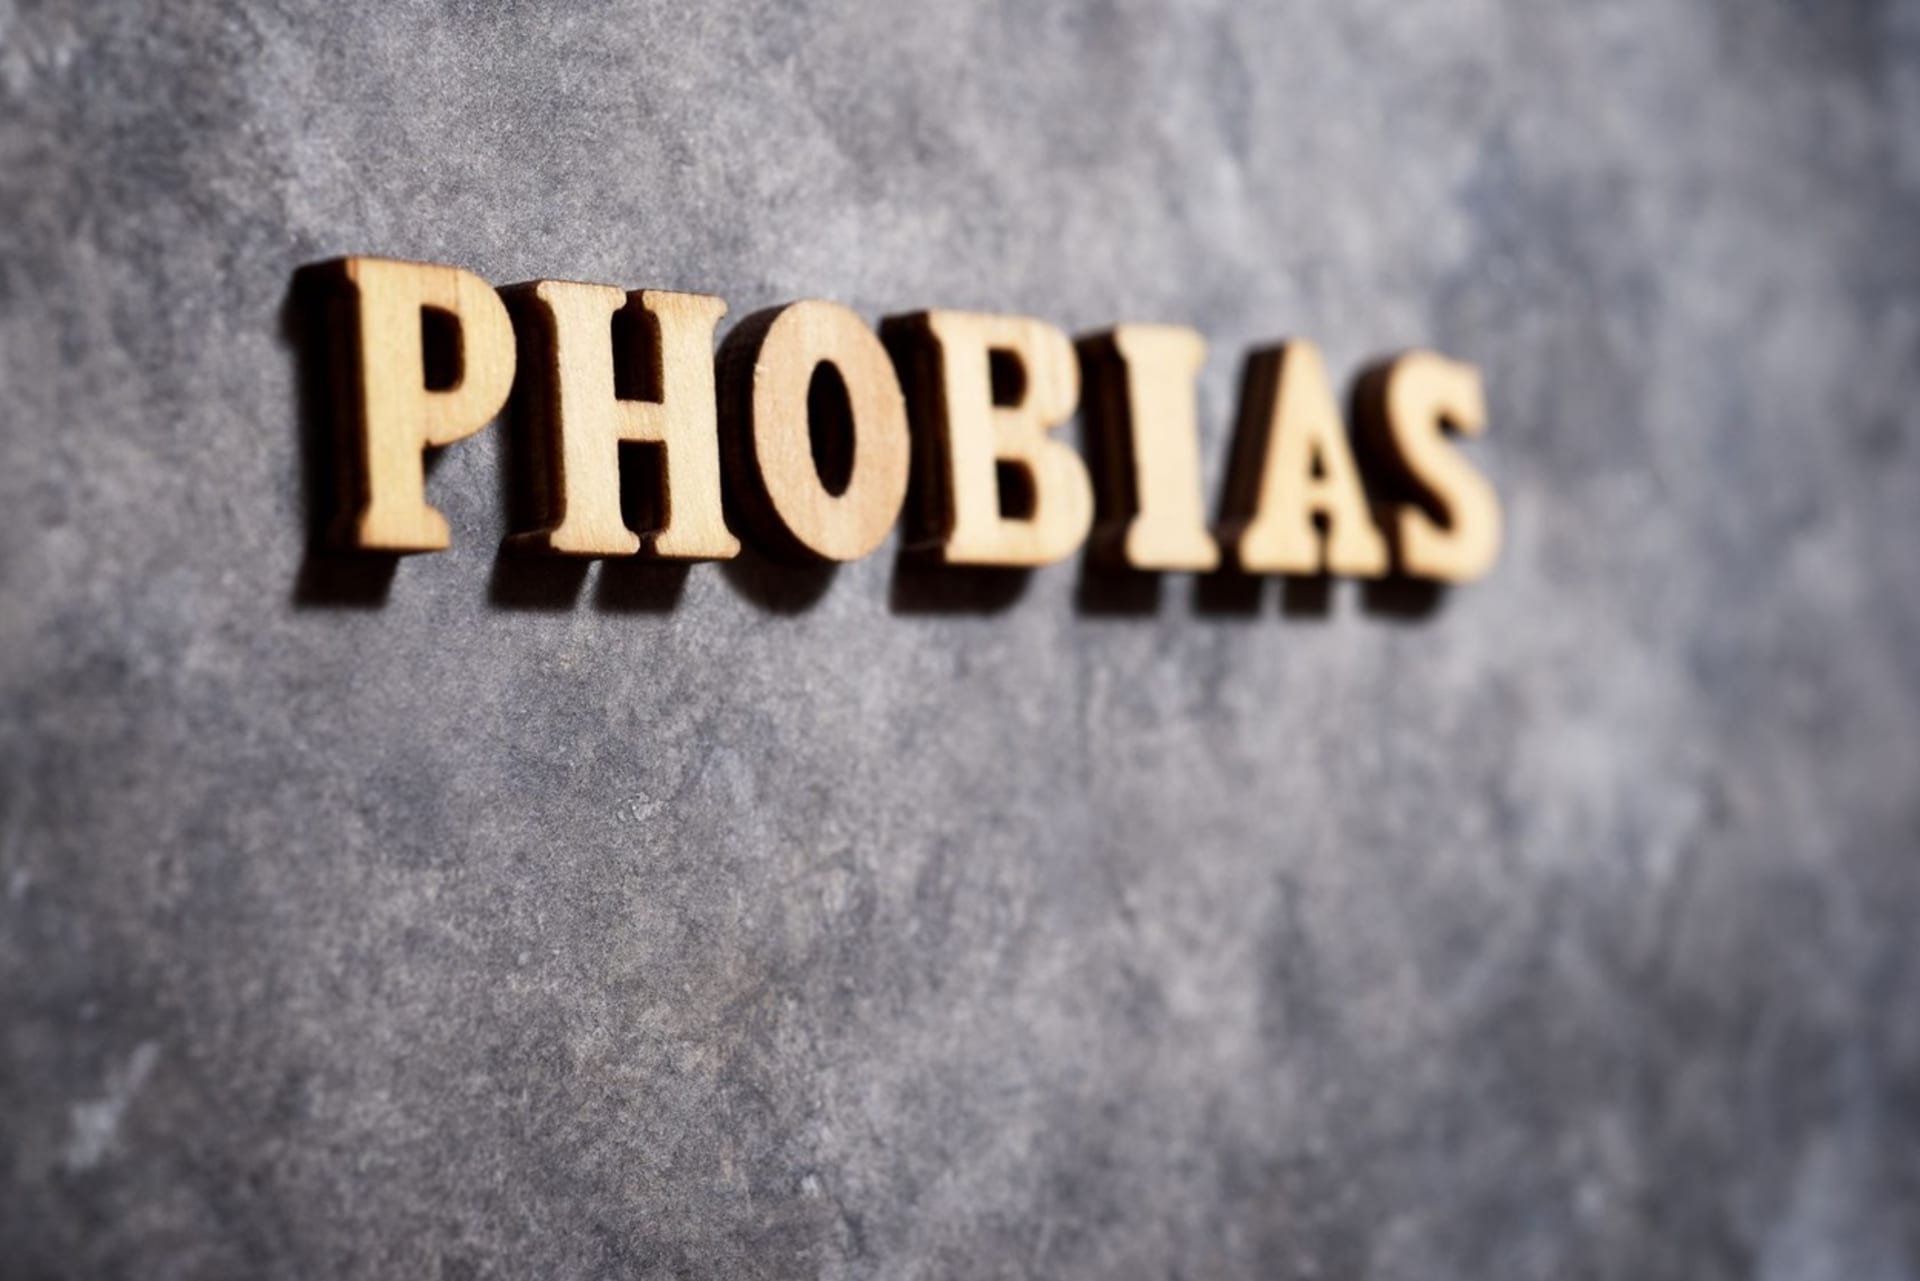 Fobie